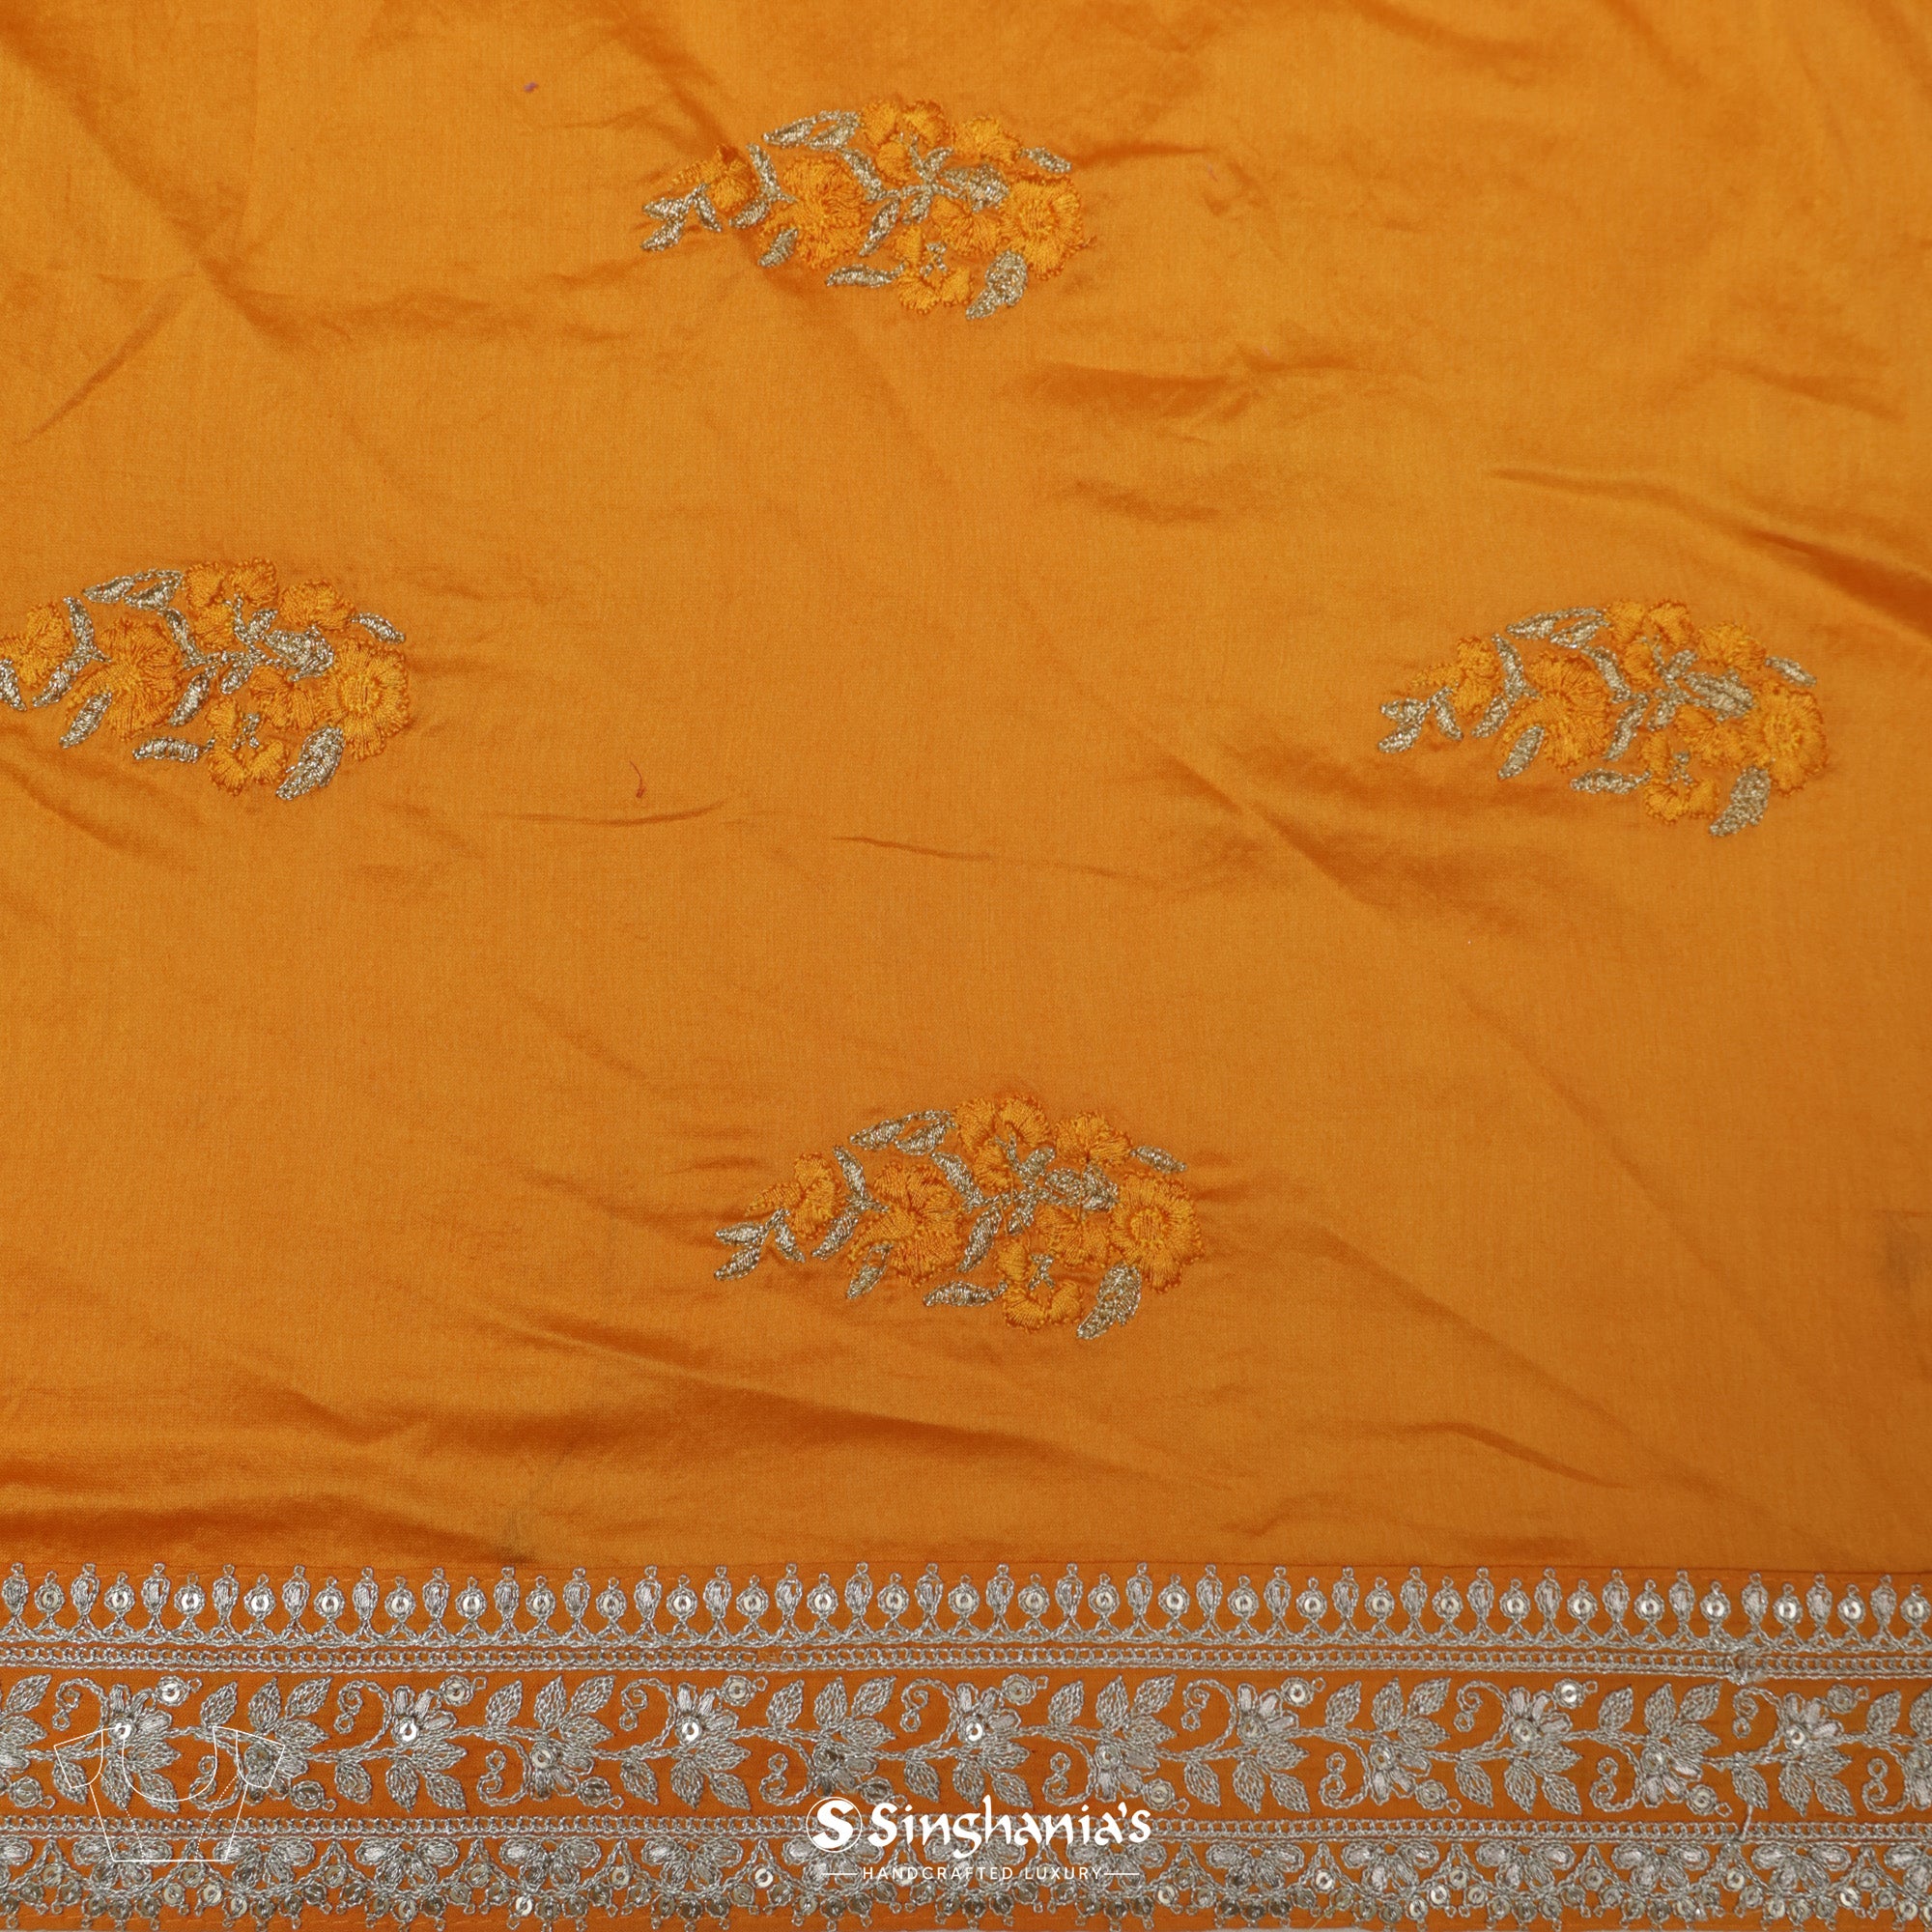 Vivid Tangelo Orange Organza Saree With Embroidery